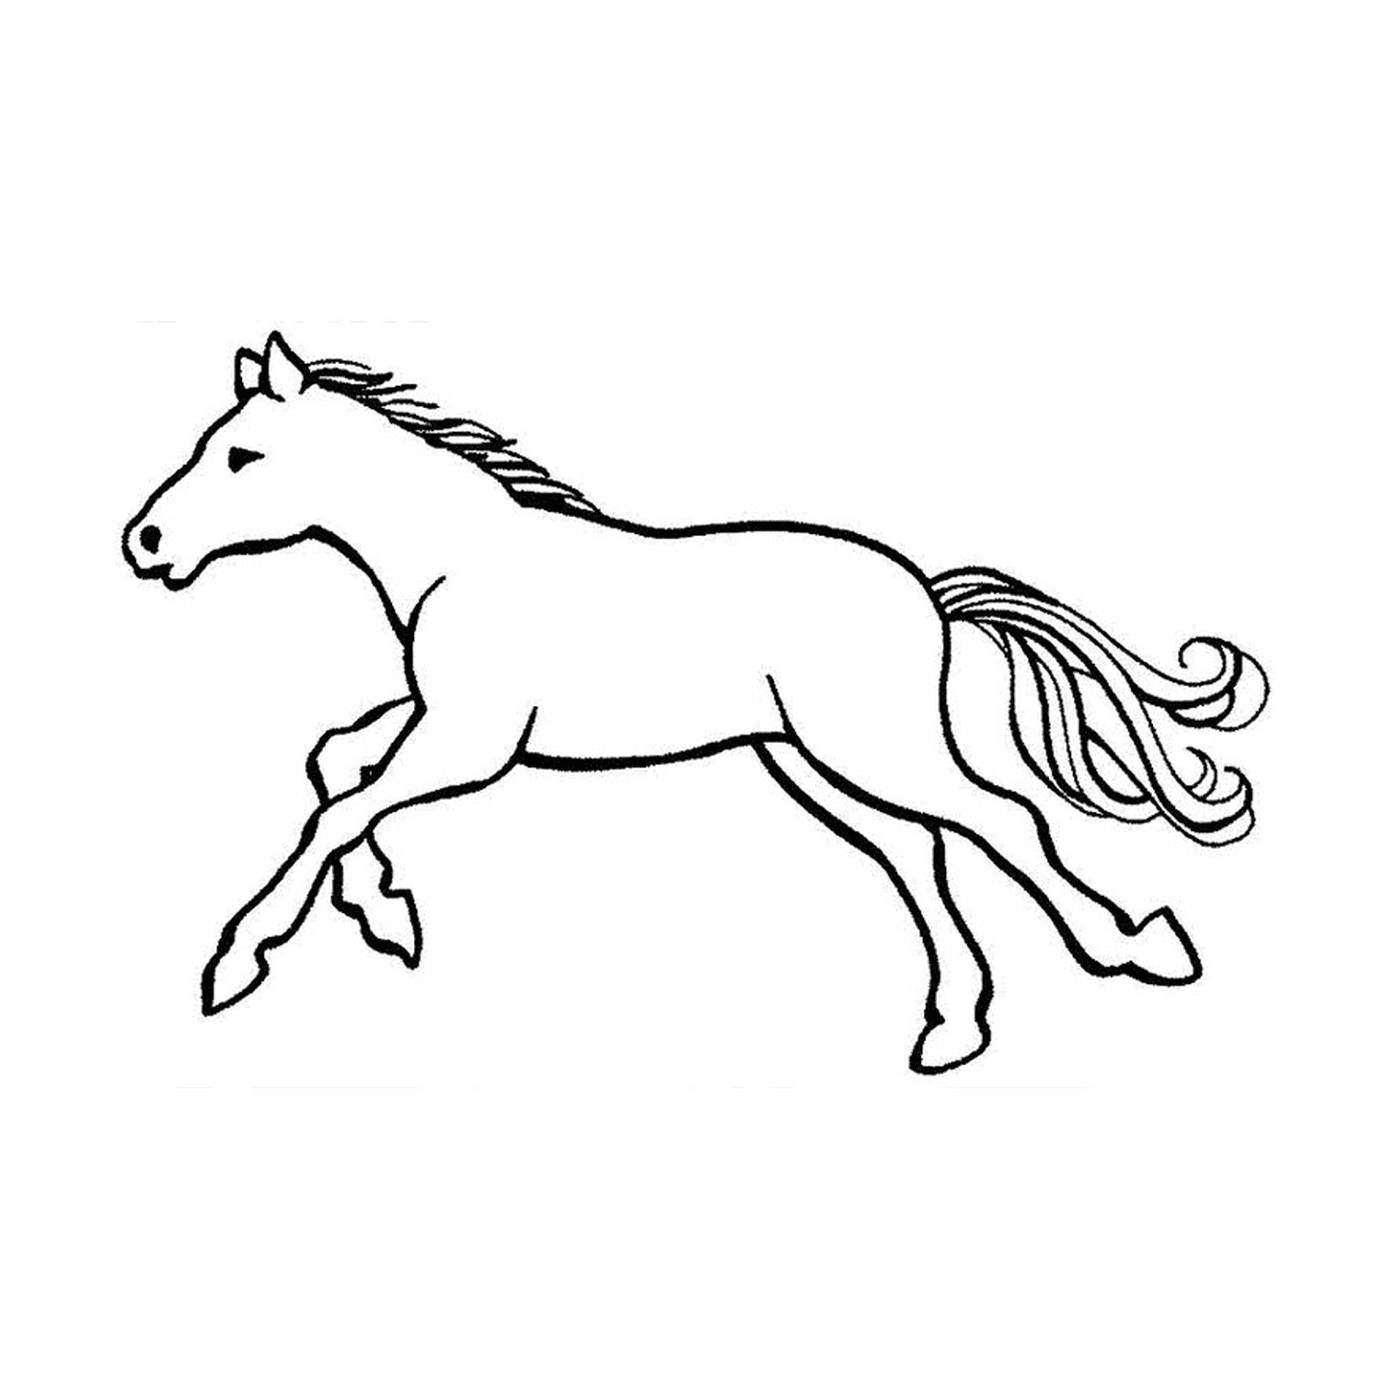  Cavalli con galoppo - Un cavallo che corre 